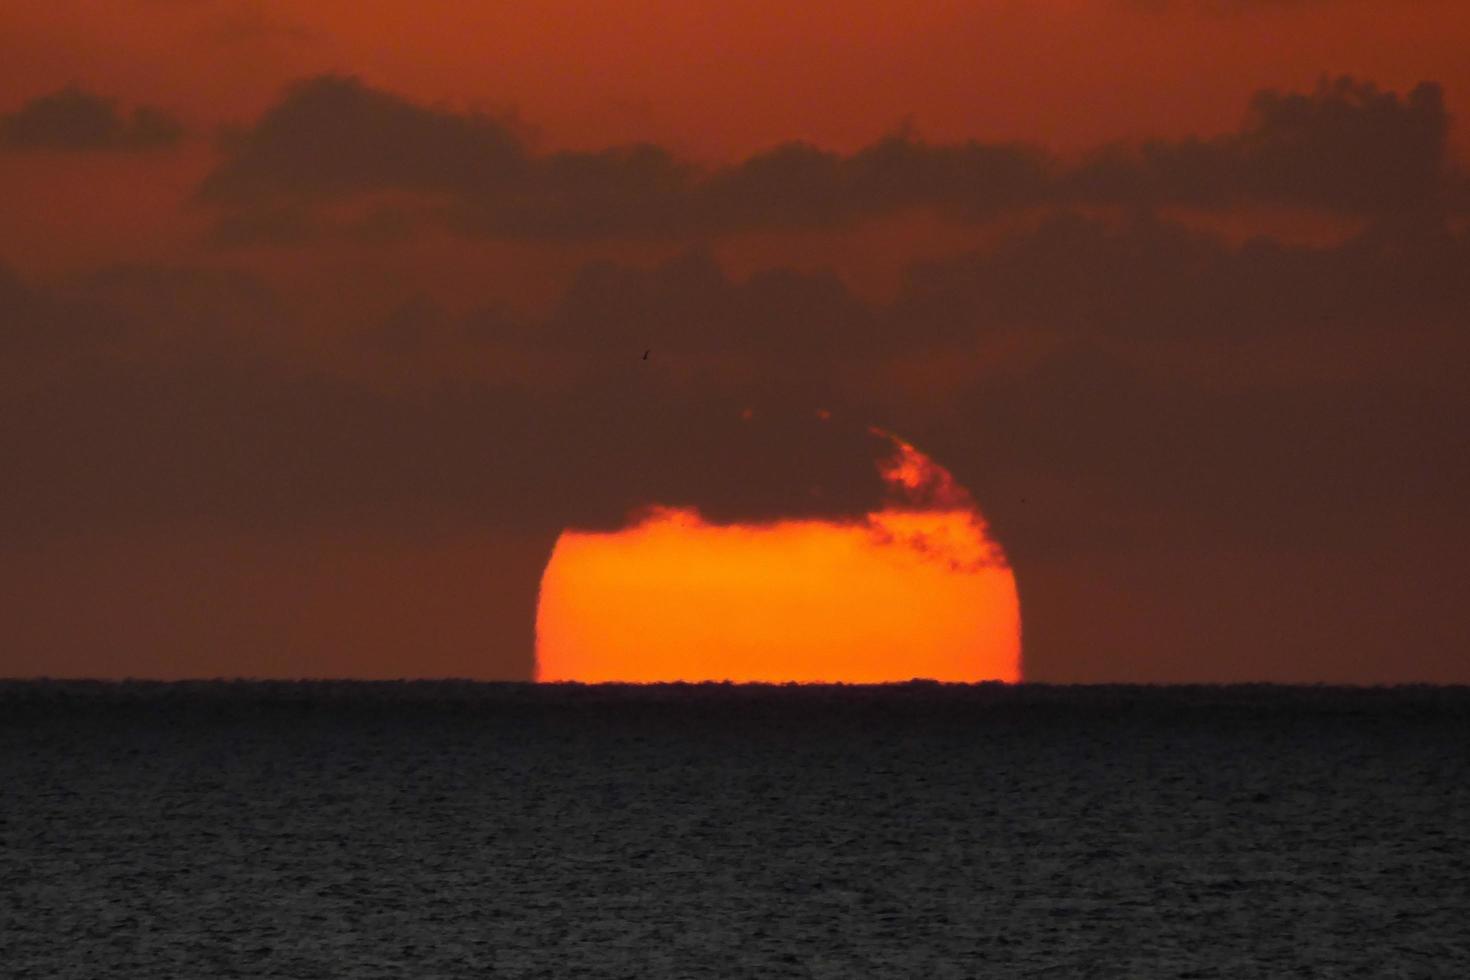 Sonnenscheibe, die über dem Horizont des Meeres aufgeht, Sonnenaufgang, Morgendämmerung foto